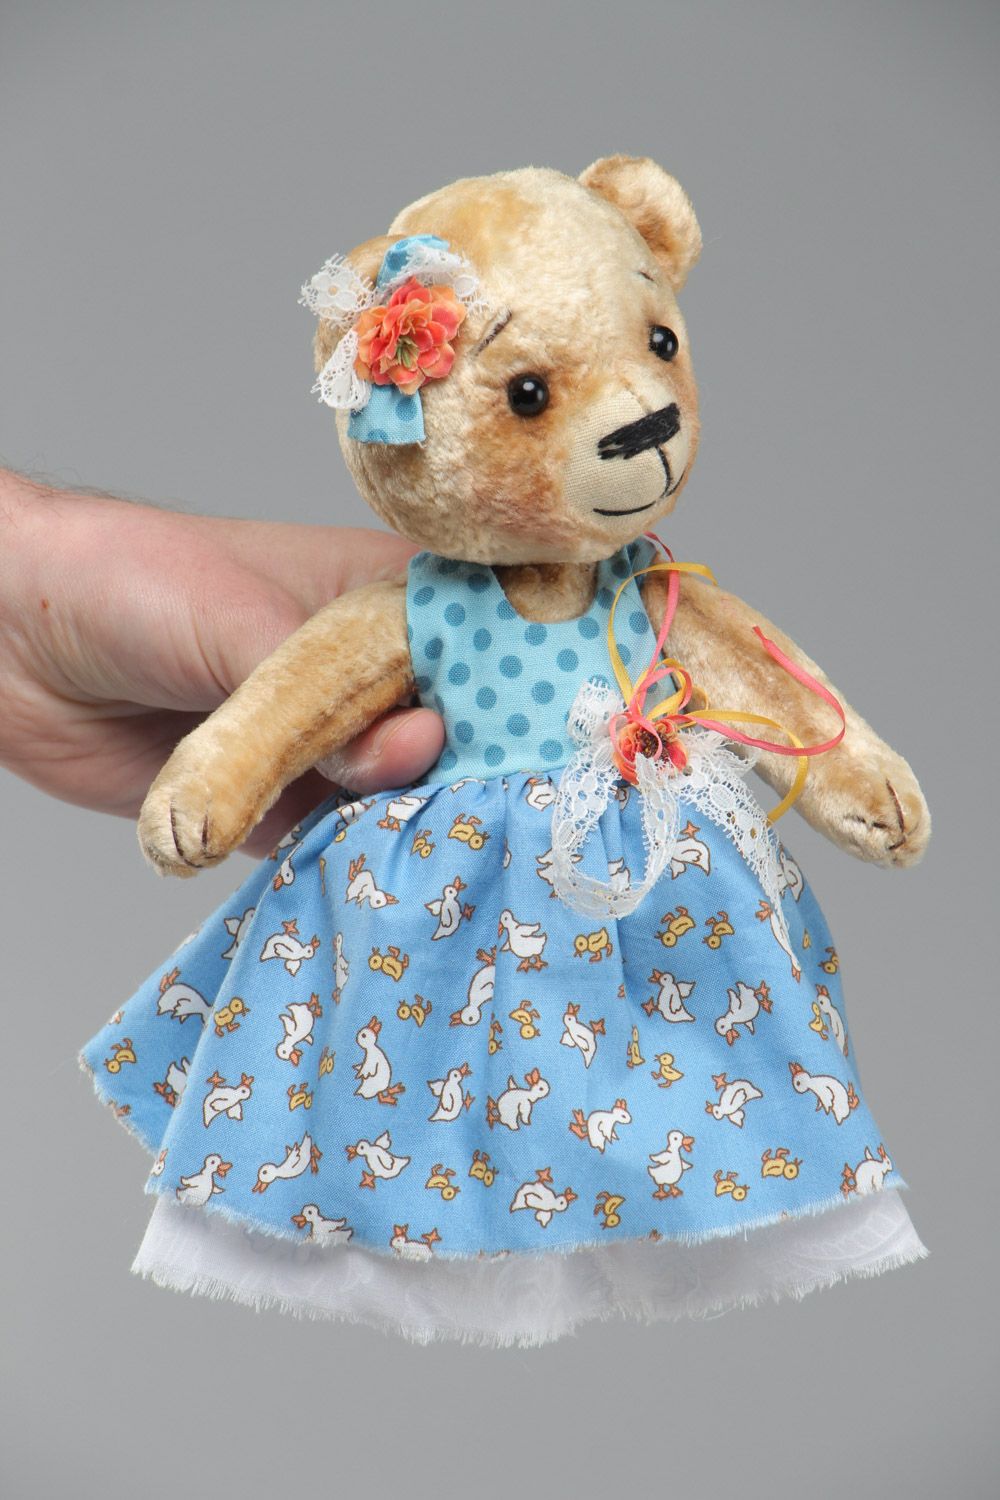 Plüsch Kuscheltier Bär im Trägerkleid handmade für Kinder schön foto 5